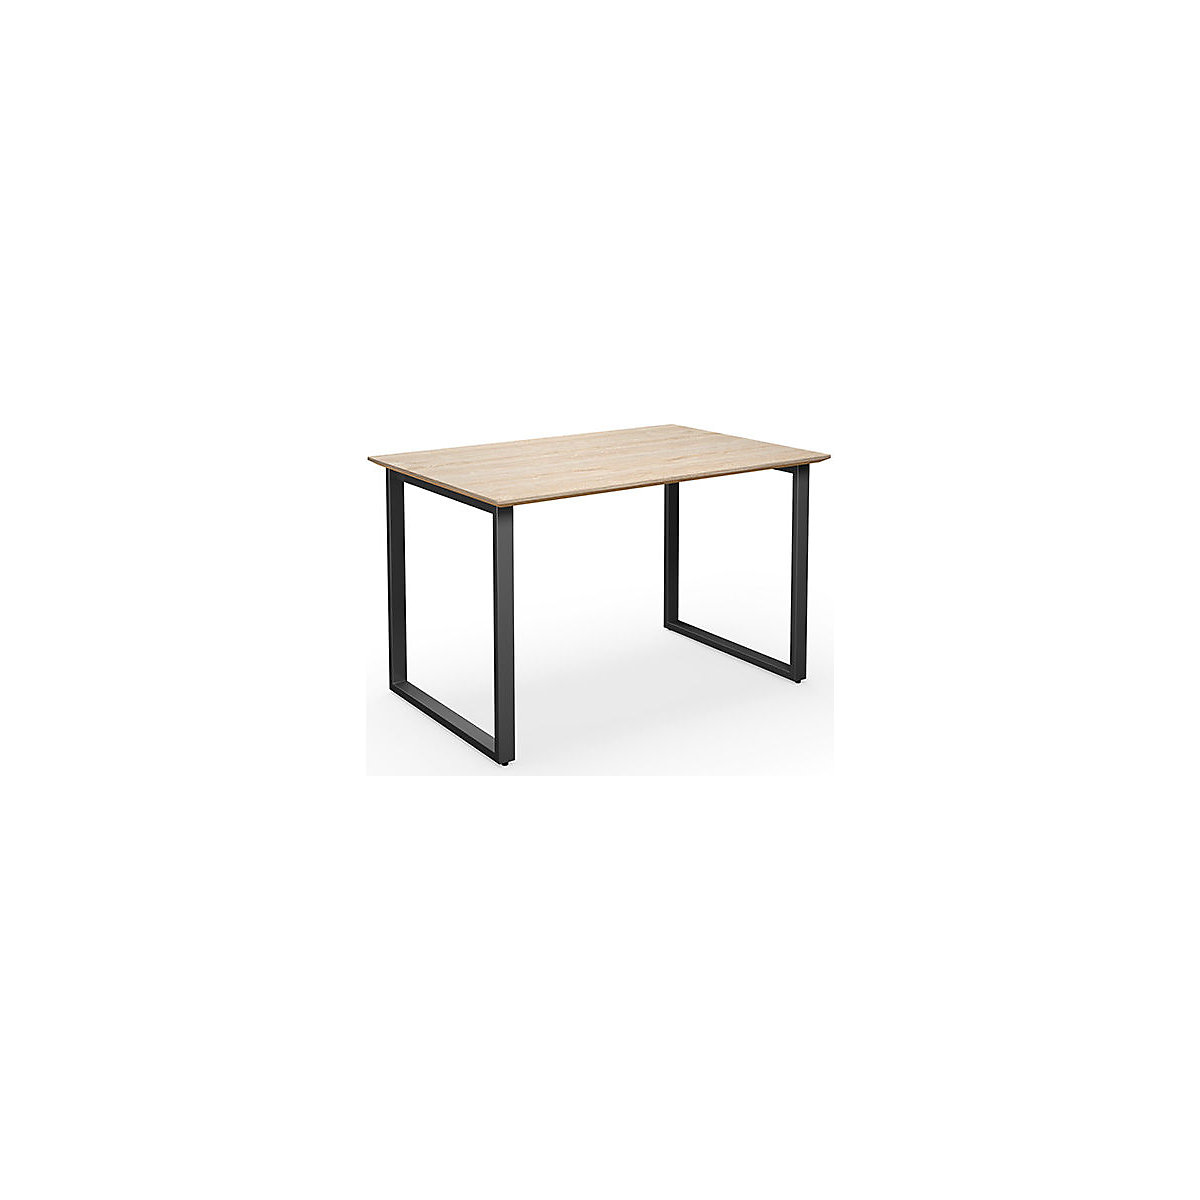 DUO-O Trend multi-purpose desk, straight tabletop